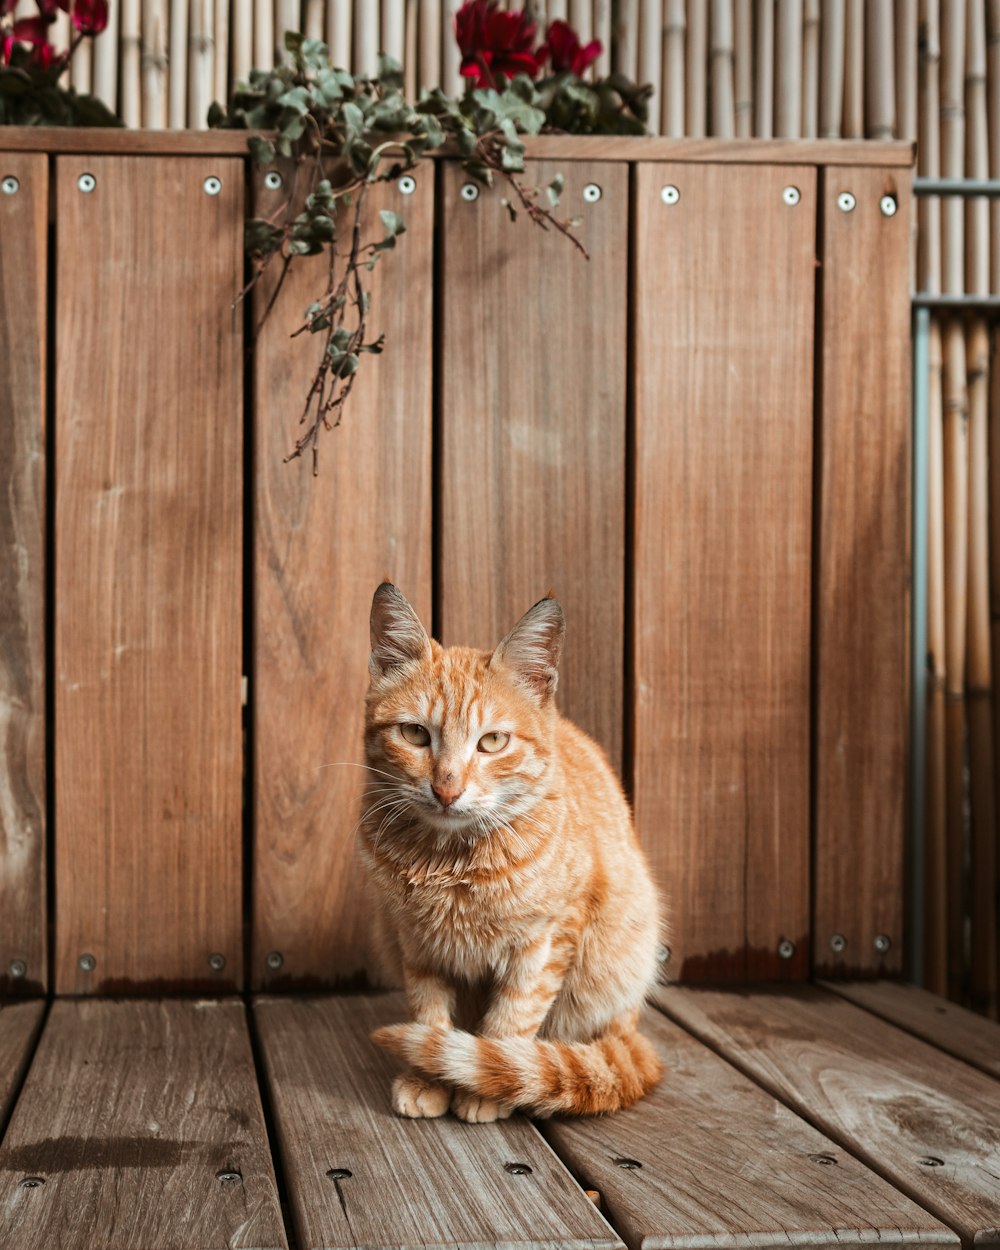 gato tabby laranja sentado no chão de madeira marrom